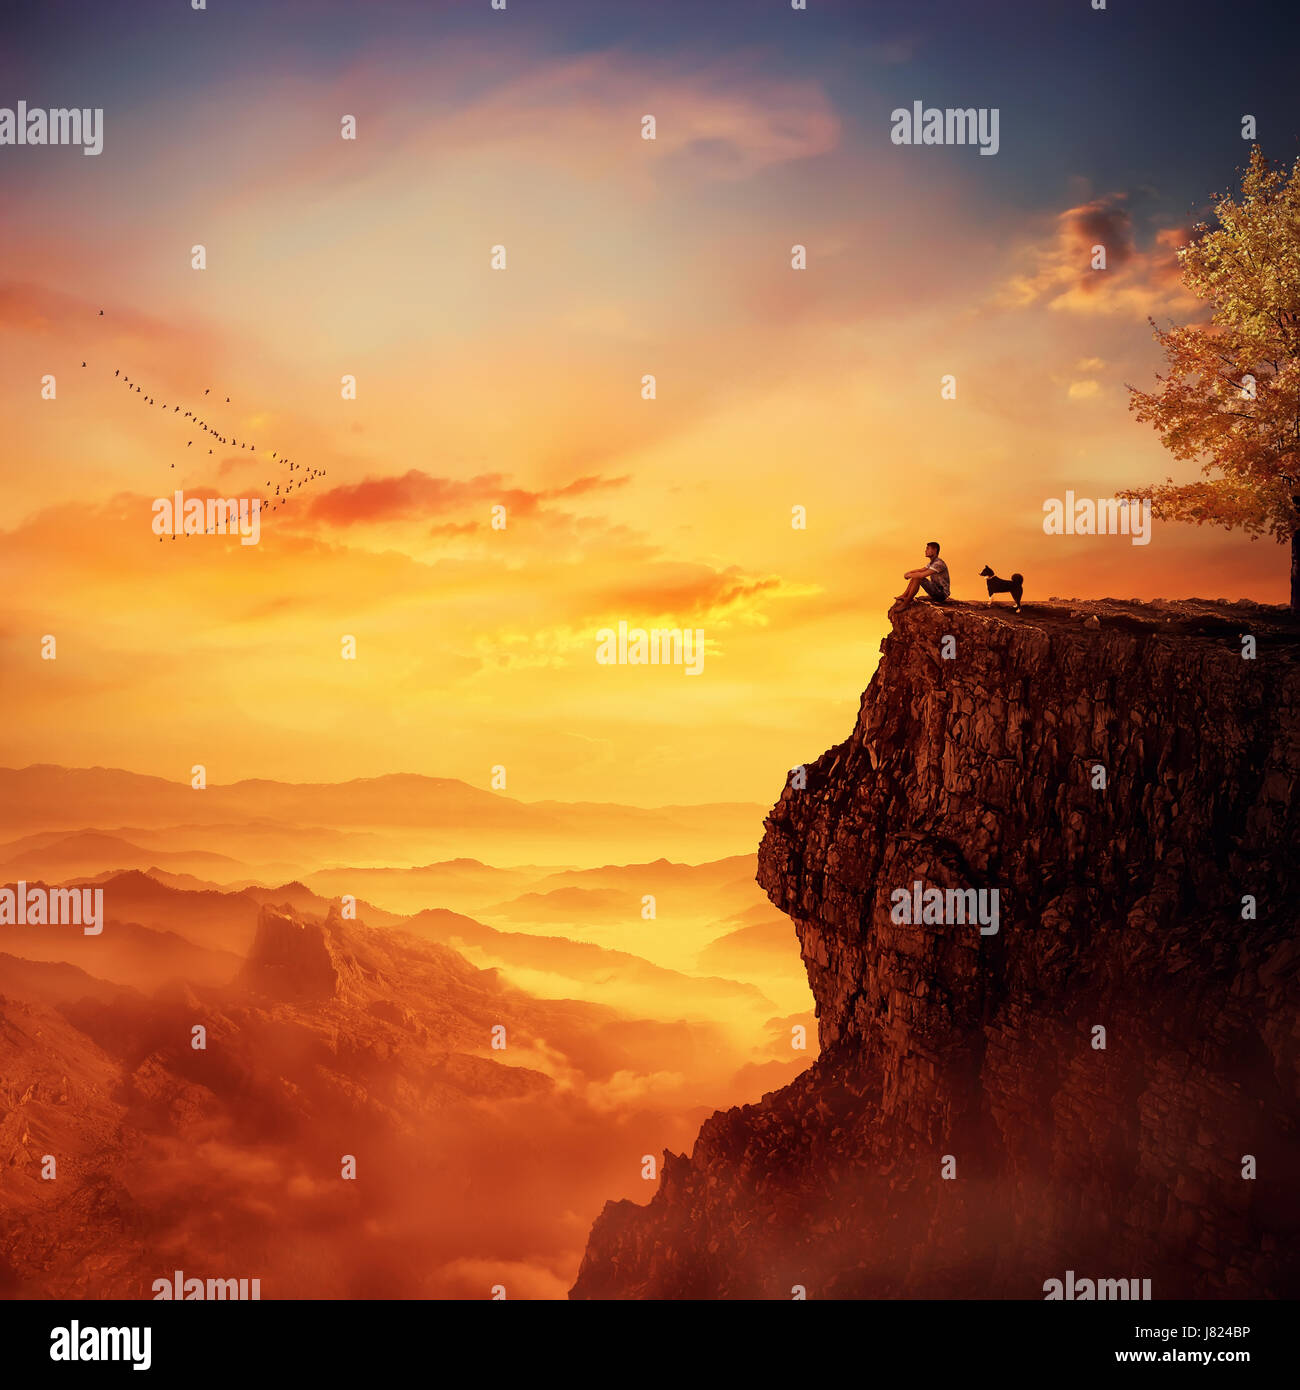 Jeune homme avec son fidèle chien debout sur le sommet d'une falaise à regarder le coucher du soleil sur la vallée. Rappelant les souvenirs d'enfance, l'amitié entre huma Banque D'Images